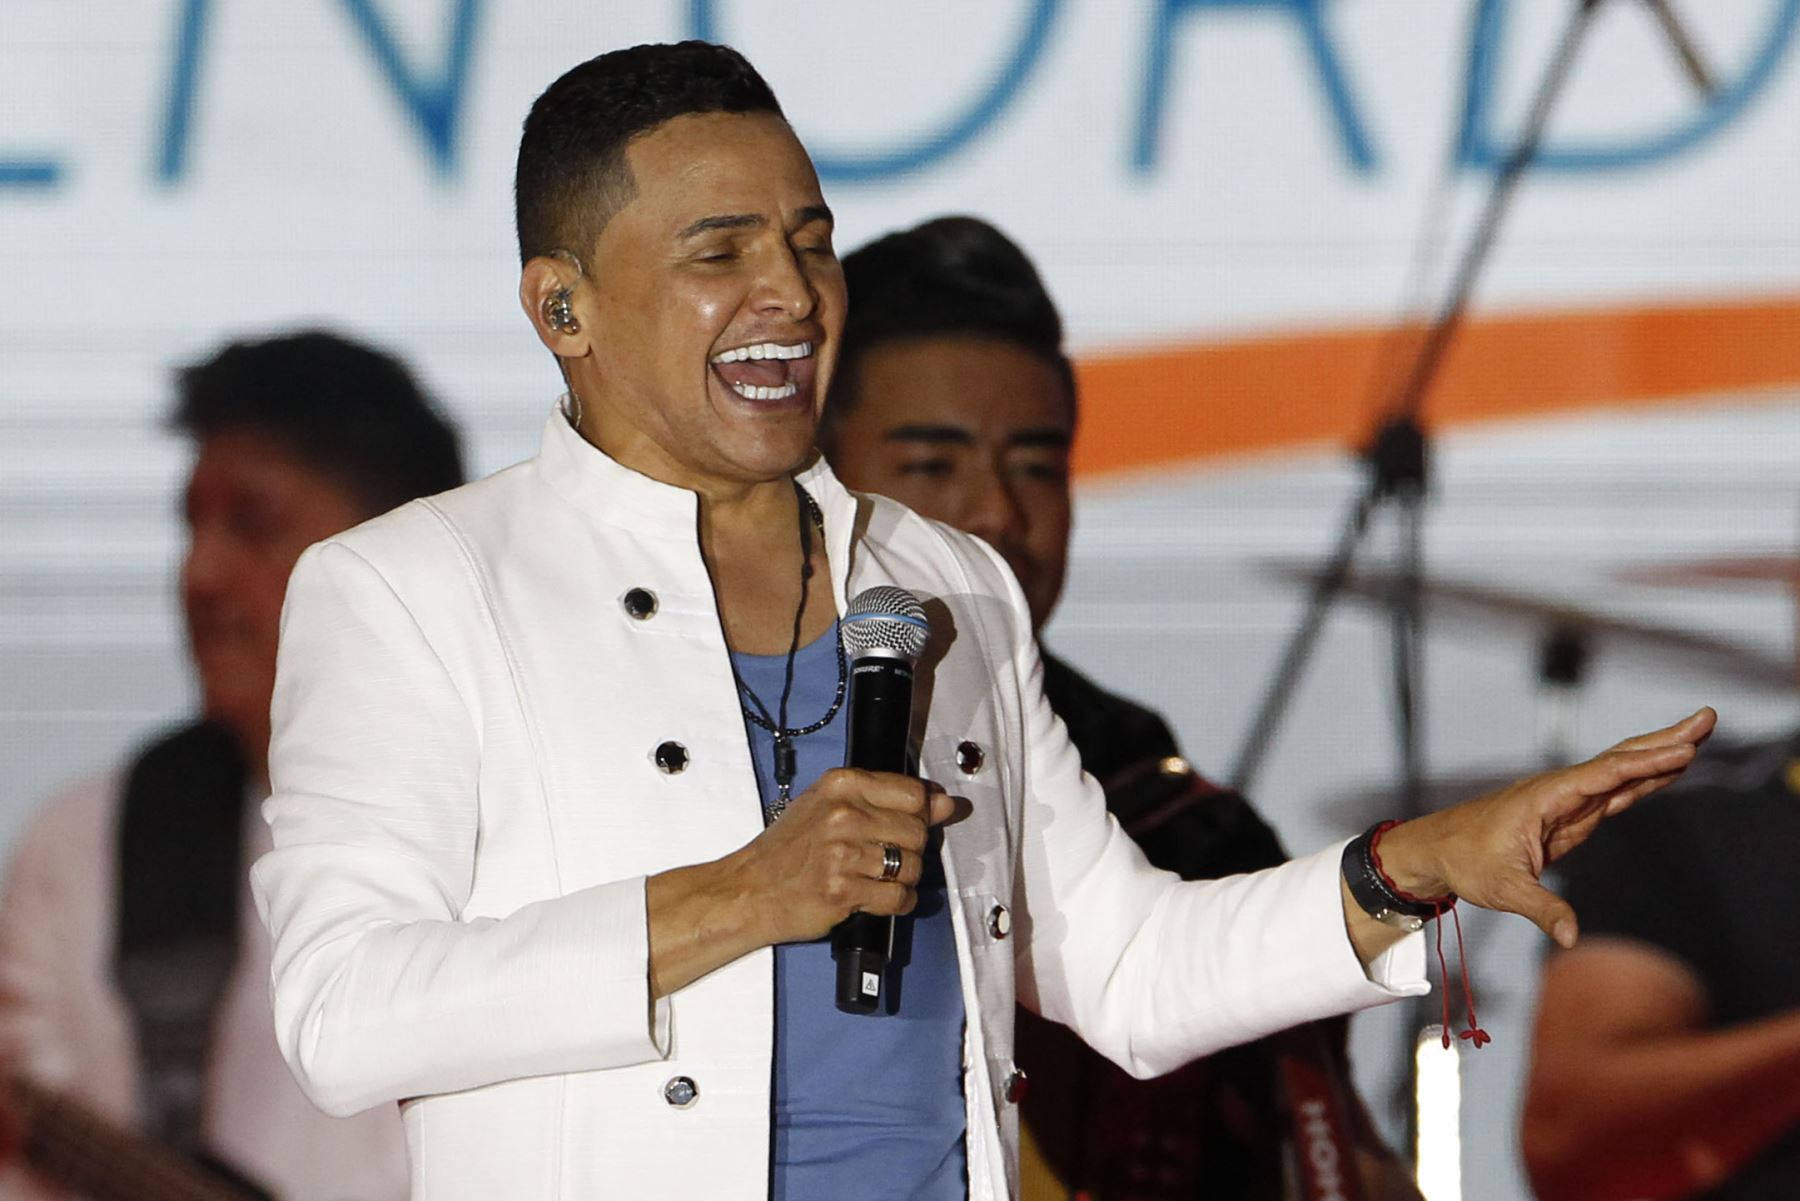 El cantante colombiano Jorge Celedón se presenta hoy, durante la clausura de los XIX Juegos Bolivarianos en Valledupar,Colombia.
Foto: EFE